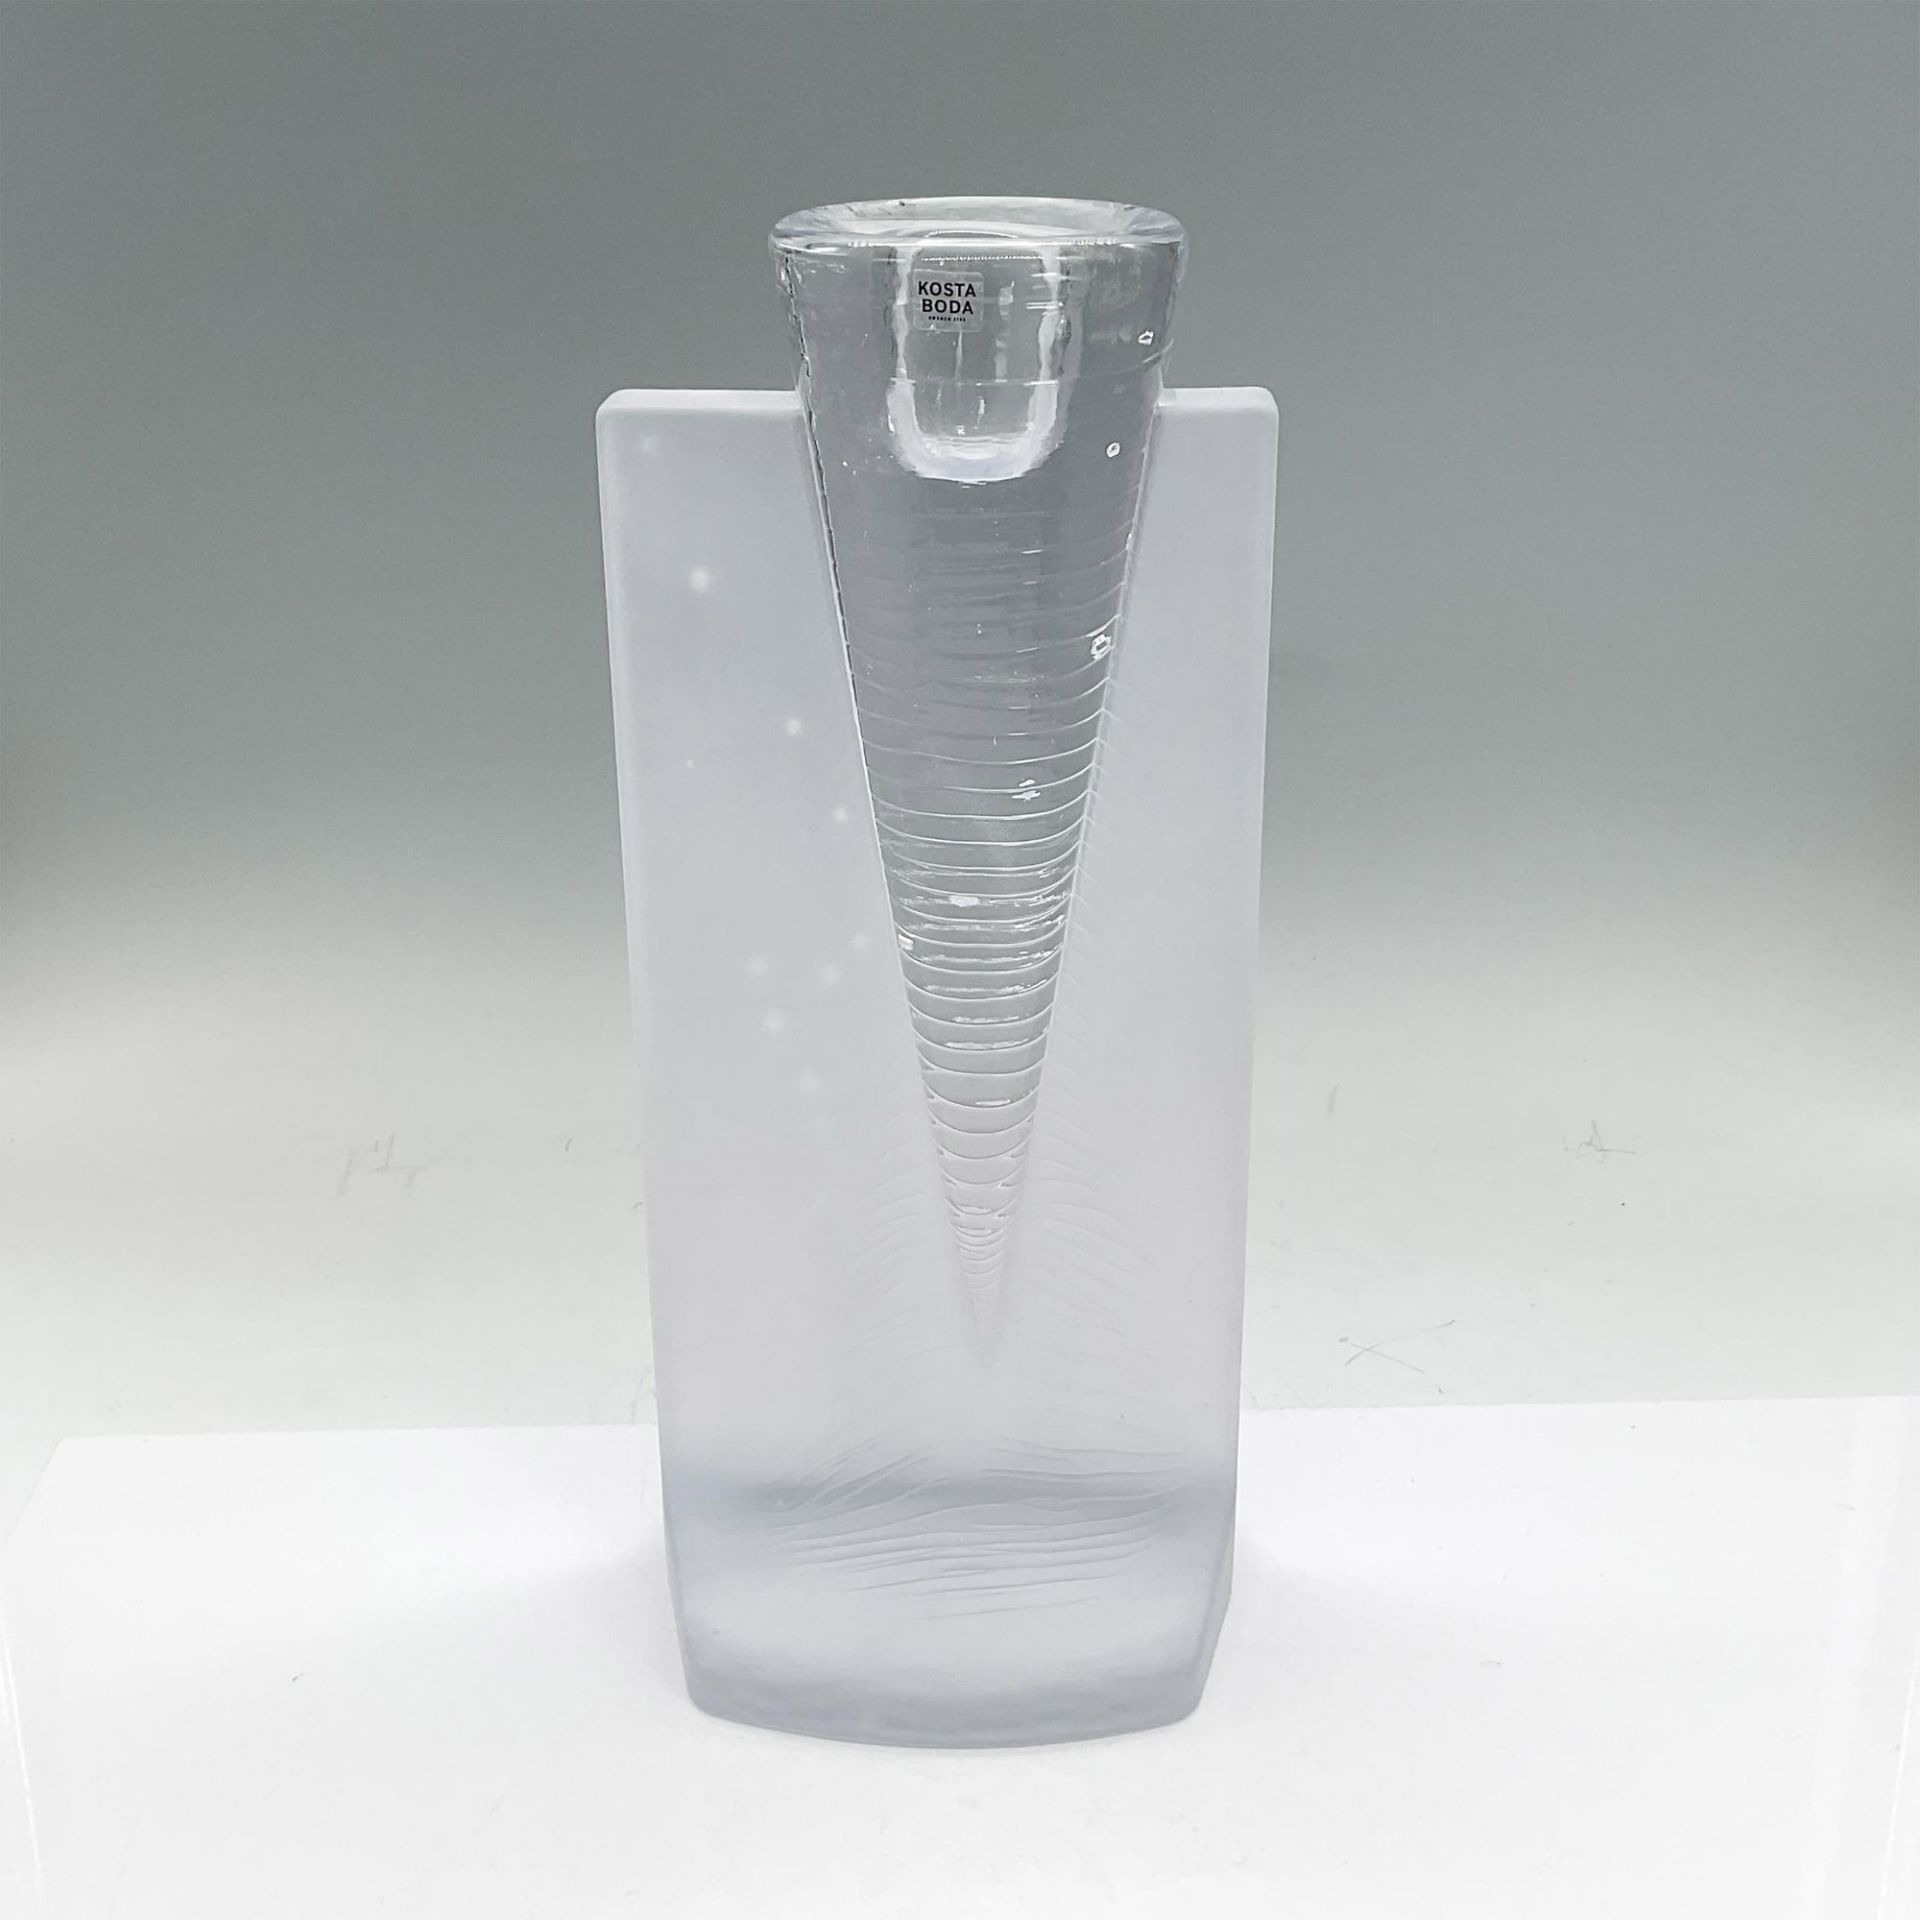 Kosta Boda Glass Candleholder, Ice Age - Image 2 of 3